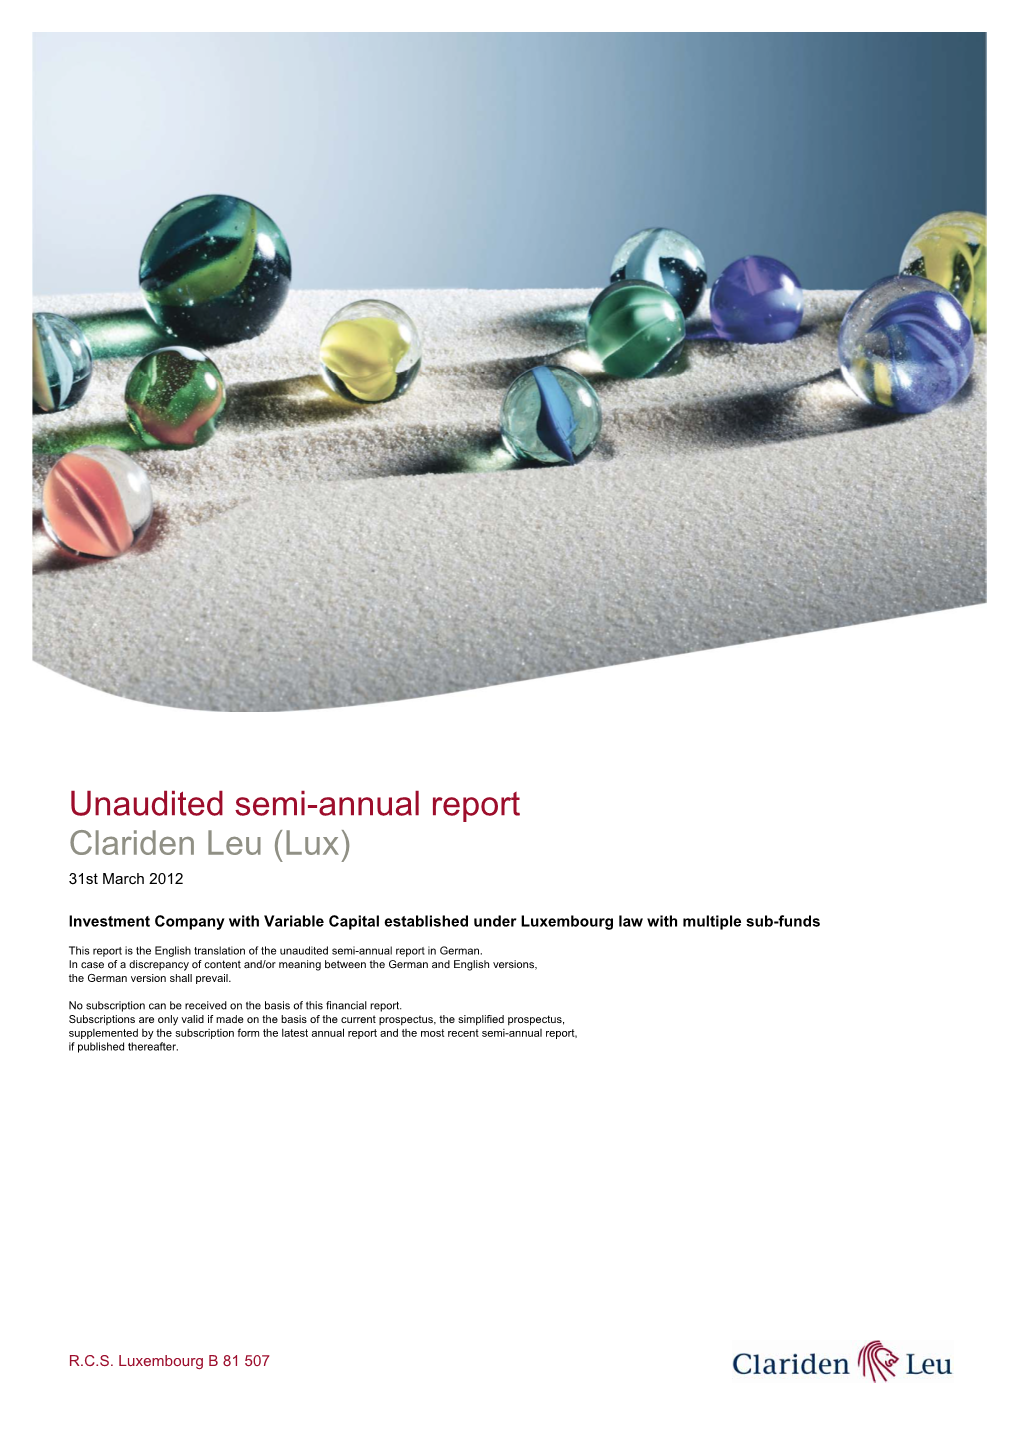 Unaudited Semi-Annual Report Clariden Leu (Lux) 31St March 2012